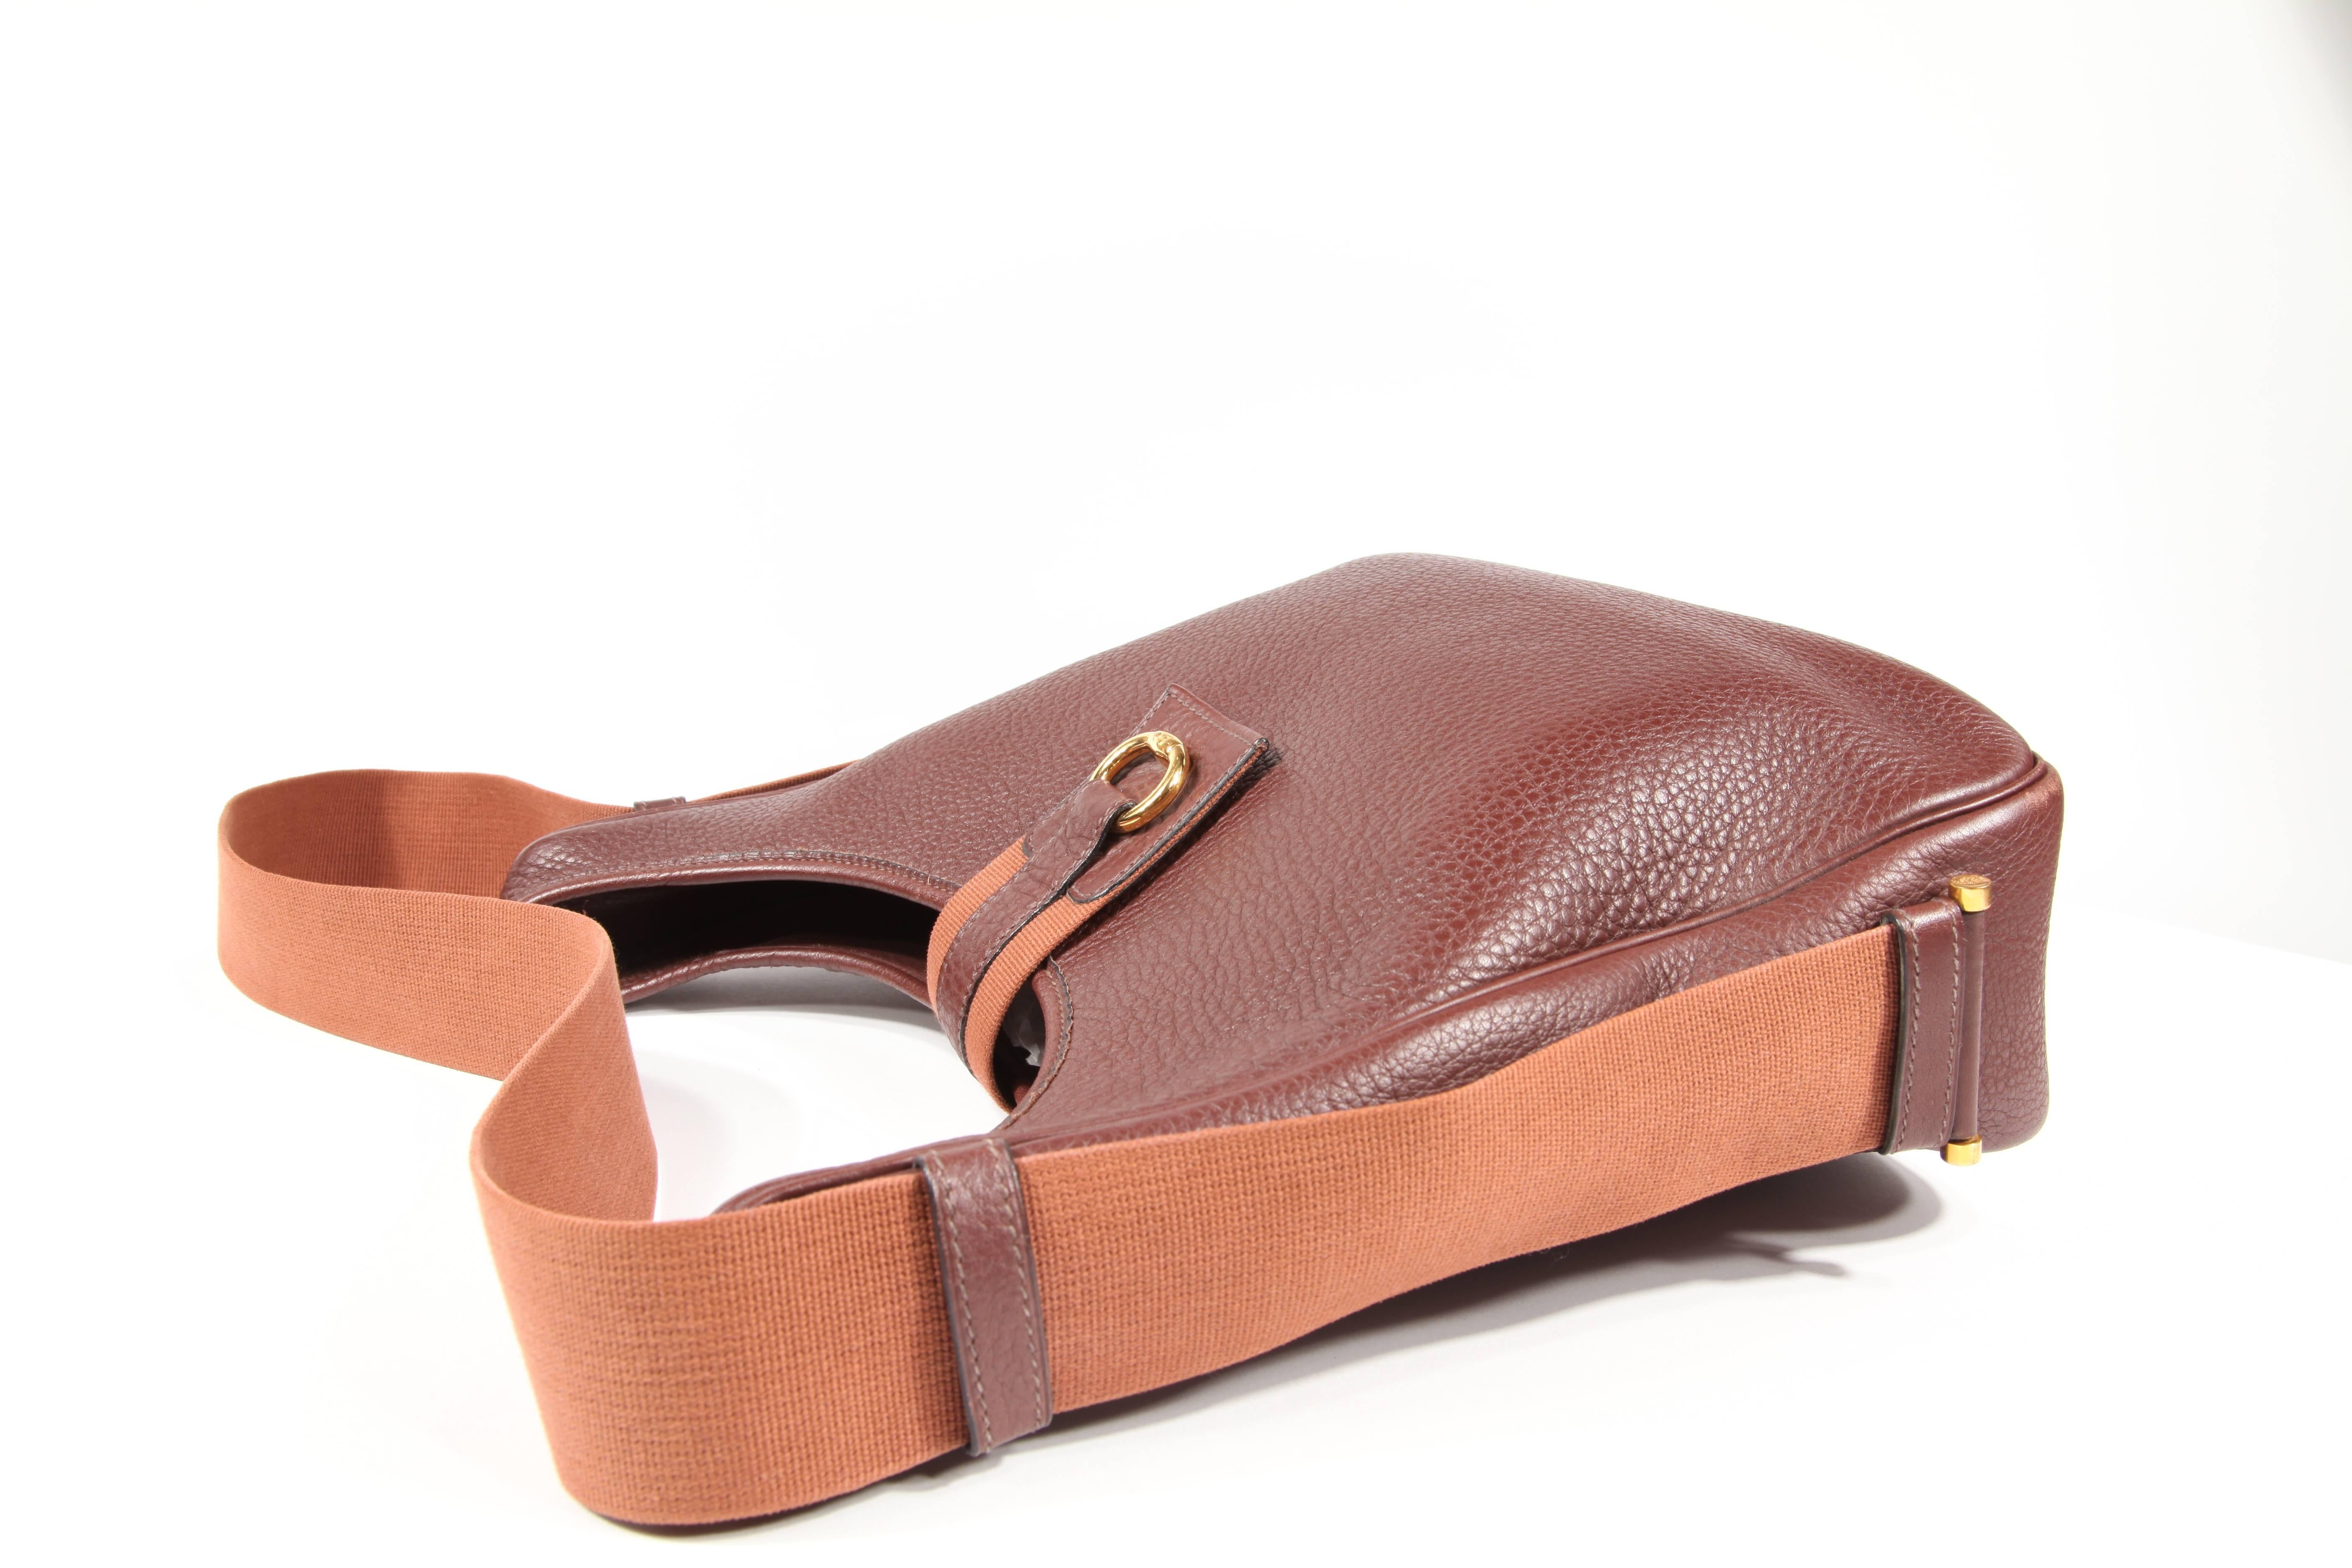 sako bag with zipper